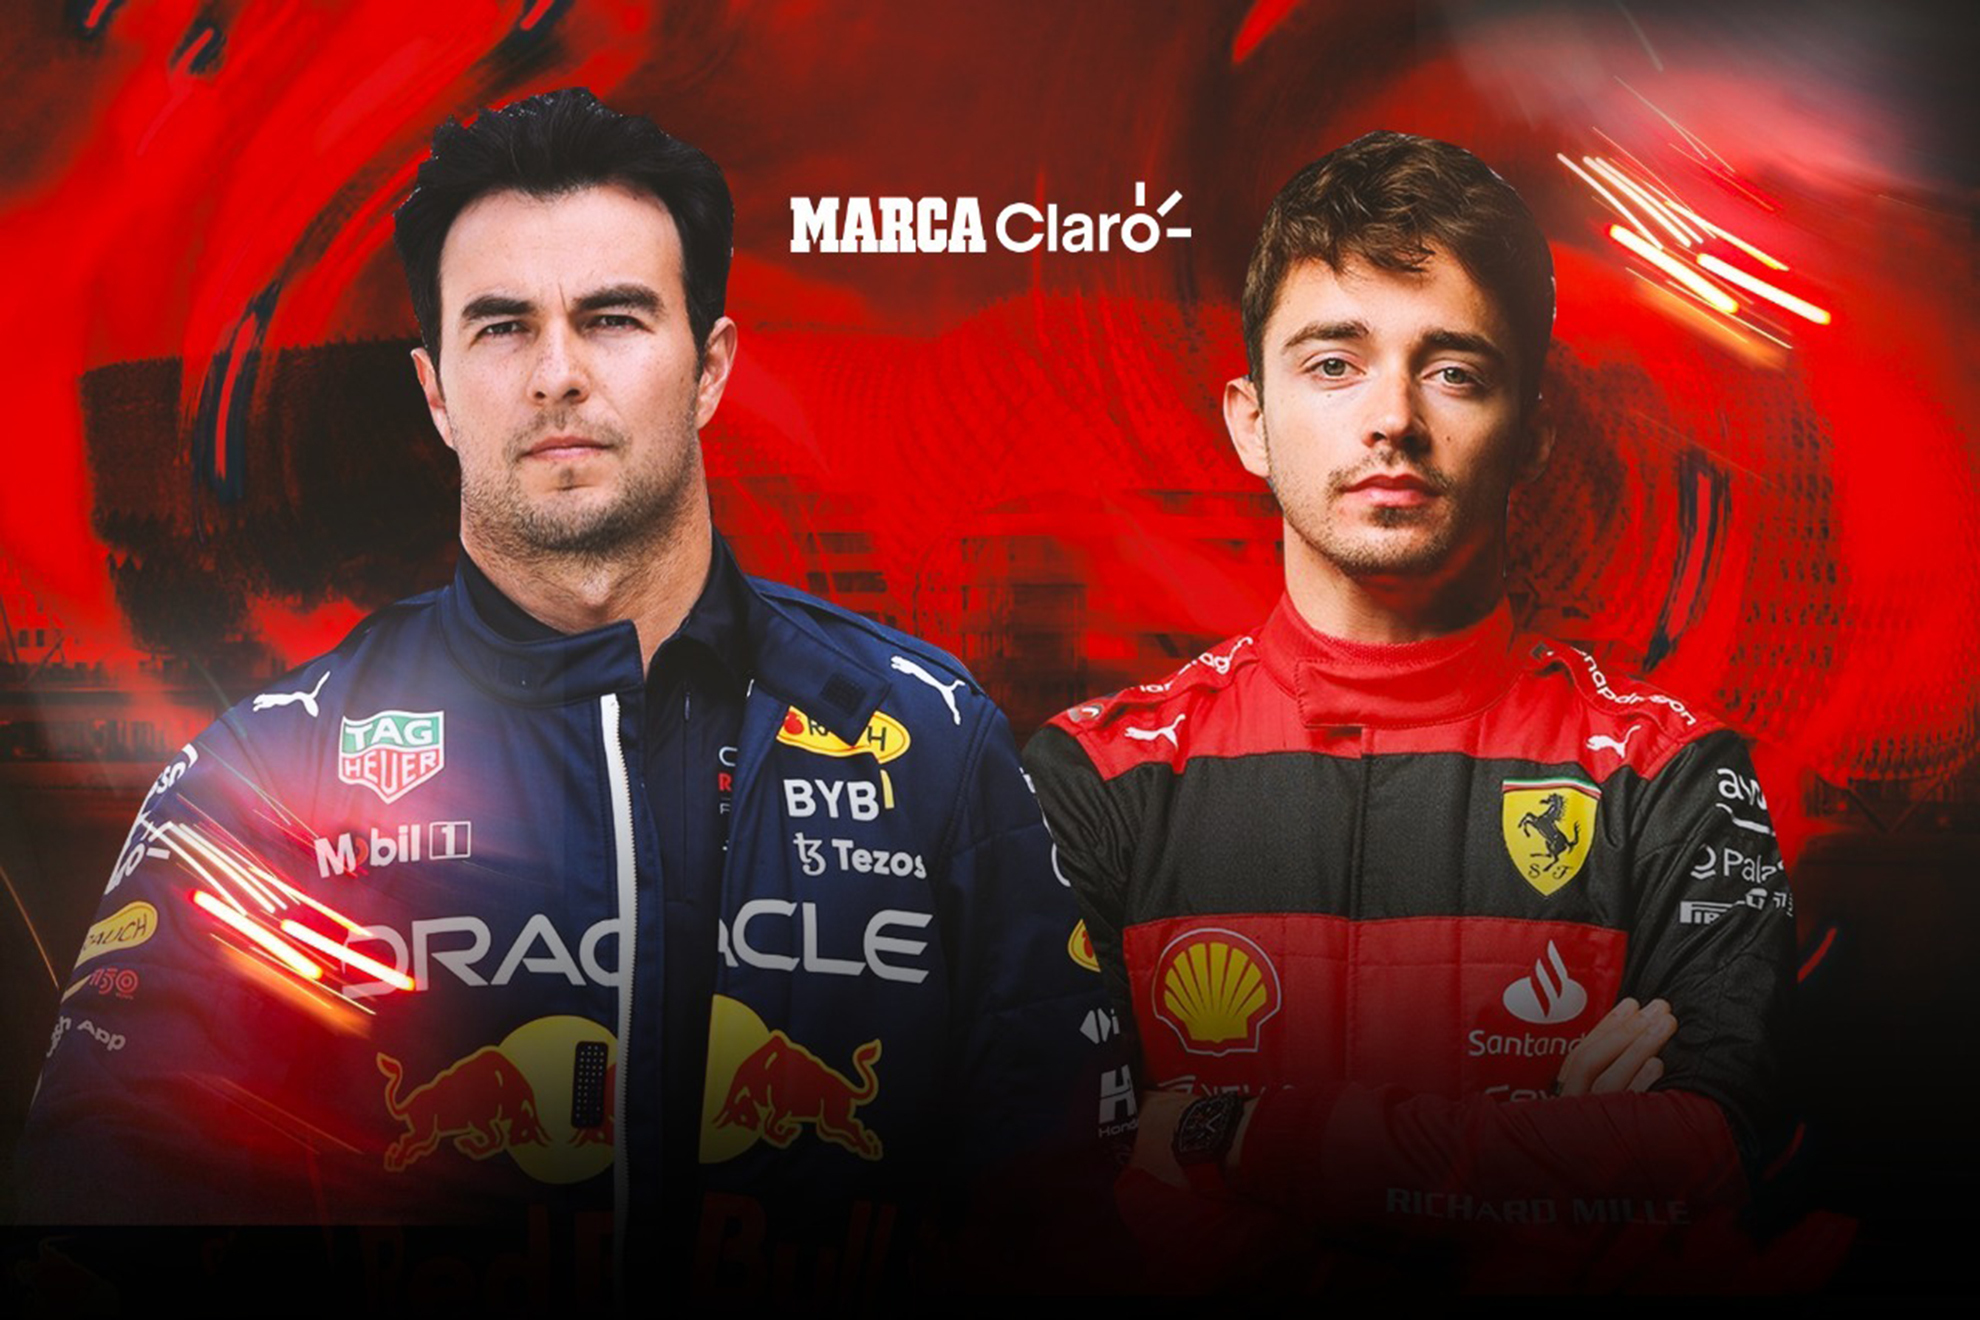 Checo y Leclerc, a definir al segundo mejor piloto de la temporada | MARCA Claro